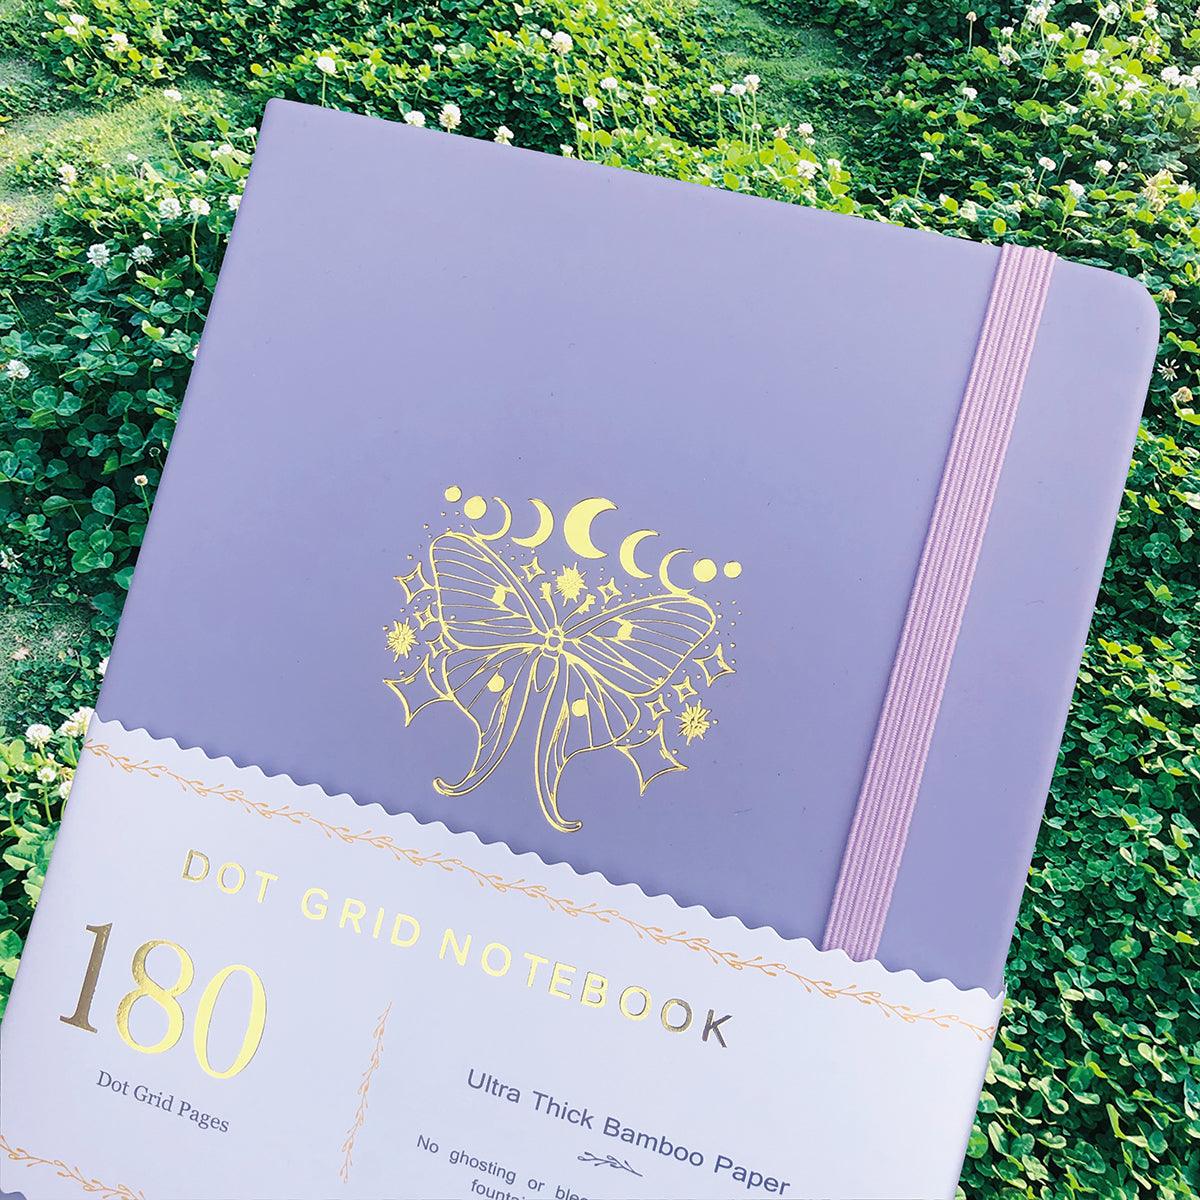 180gsm Bamboo Paper A5 Dotted Notebook Bullet Journal Butterfly Light Purple - bukenotebook